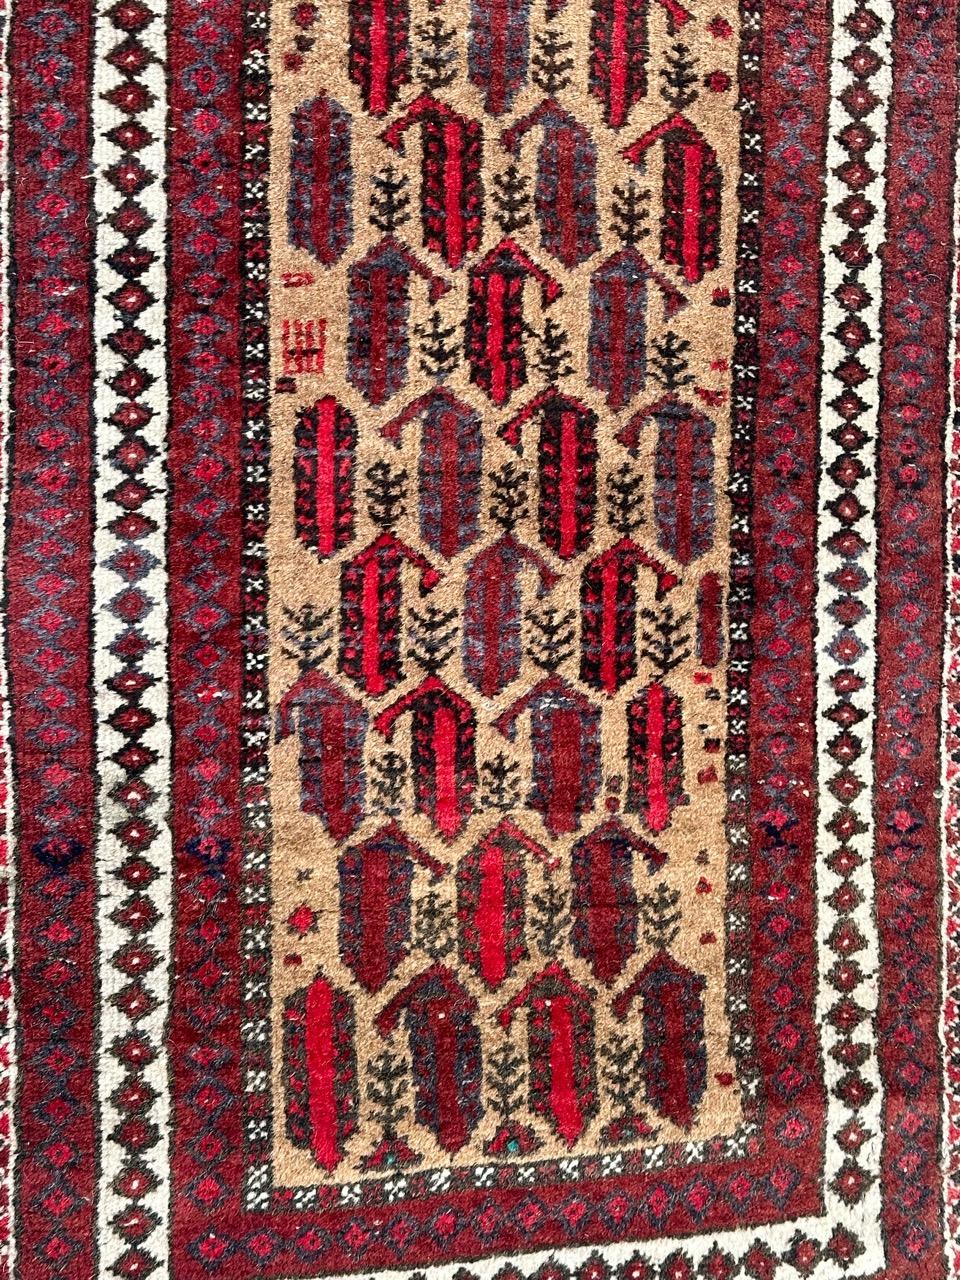 Hübscher turkmenischer Belutsch-Teppich aus der Mitte des Jahrhunderts mit stilisierten Mustern und schönen Farben mit gelbem Feld, rot, braun, lila, weiß und schwarz, komplett handgeknüpft mit Wolle auf Baumwollgrund.

✨✨✨
